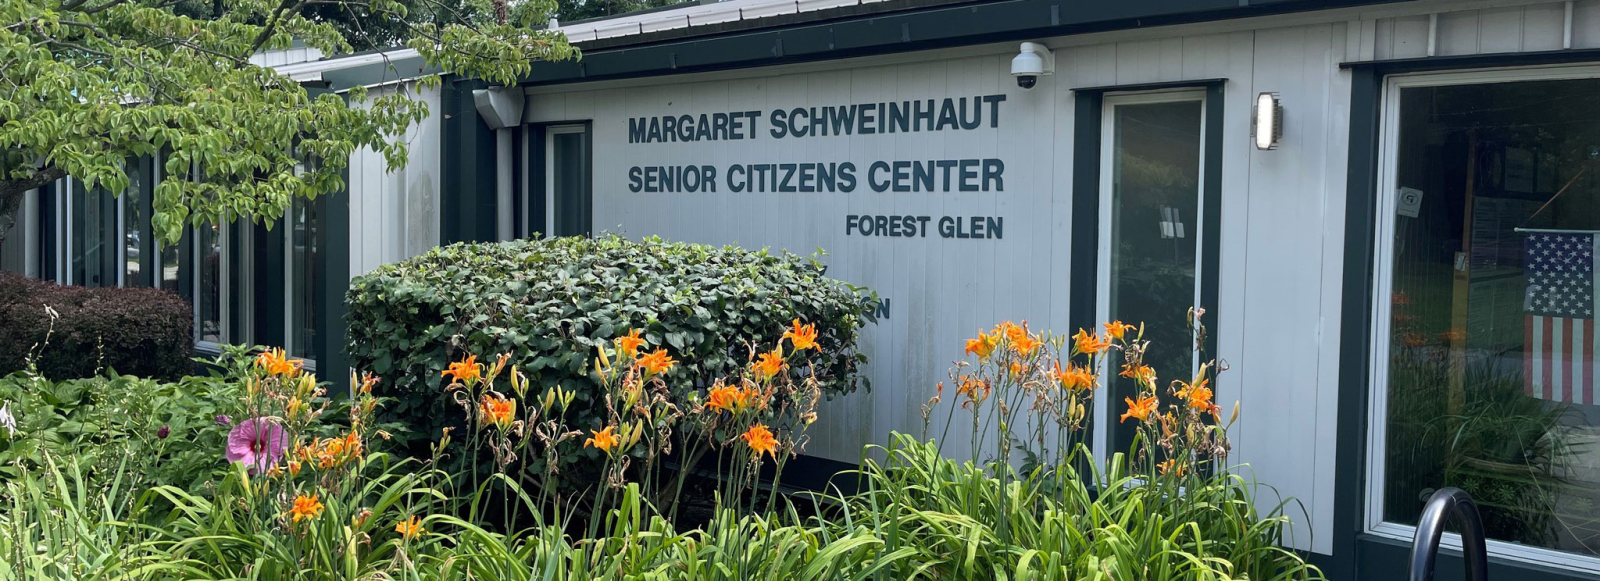 Schweinhaut senior center